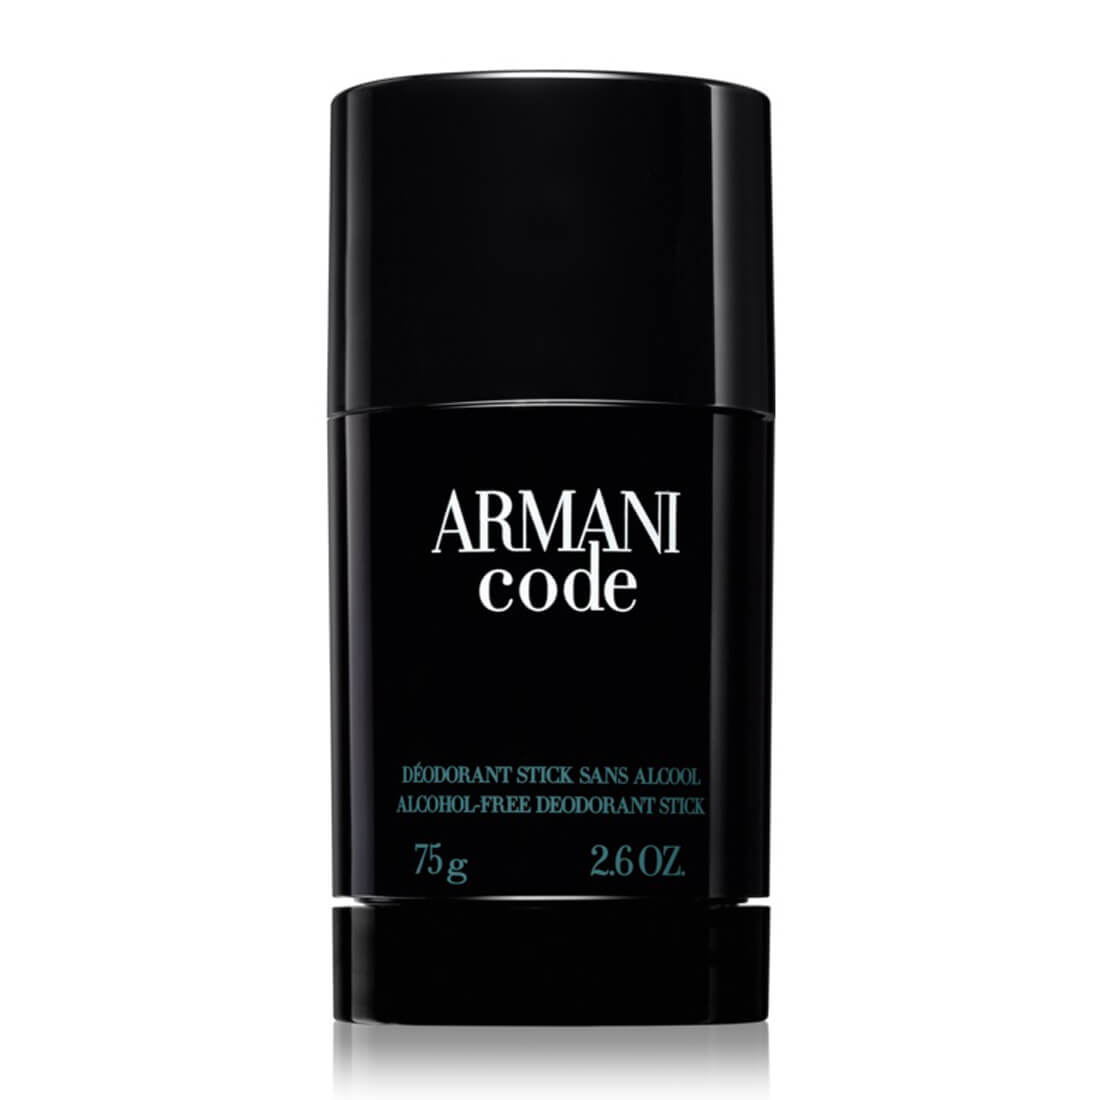 Giorgio Armani Armani Code Deodorant Stick For Men - 75g